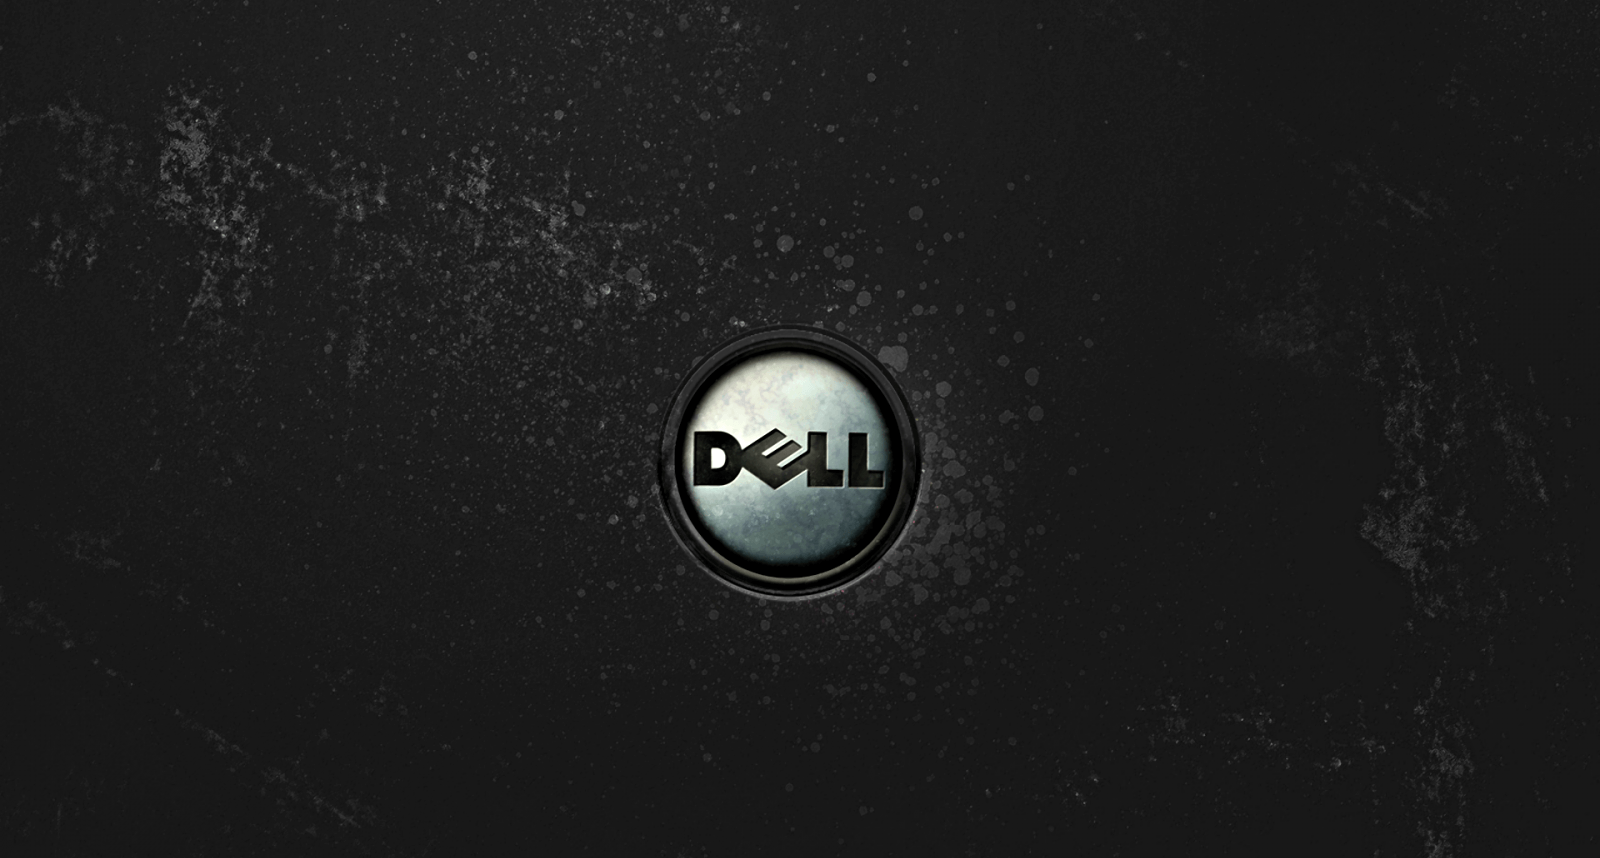 Datorområdetblev Precis Enklare Med Dell.